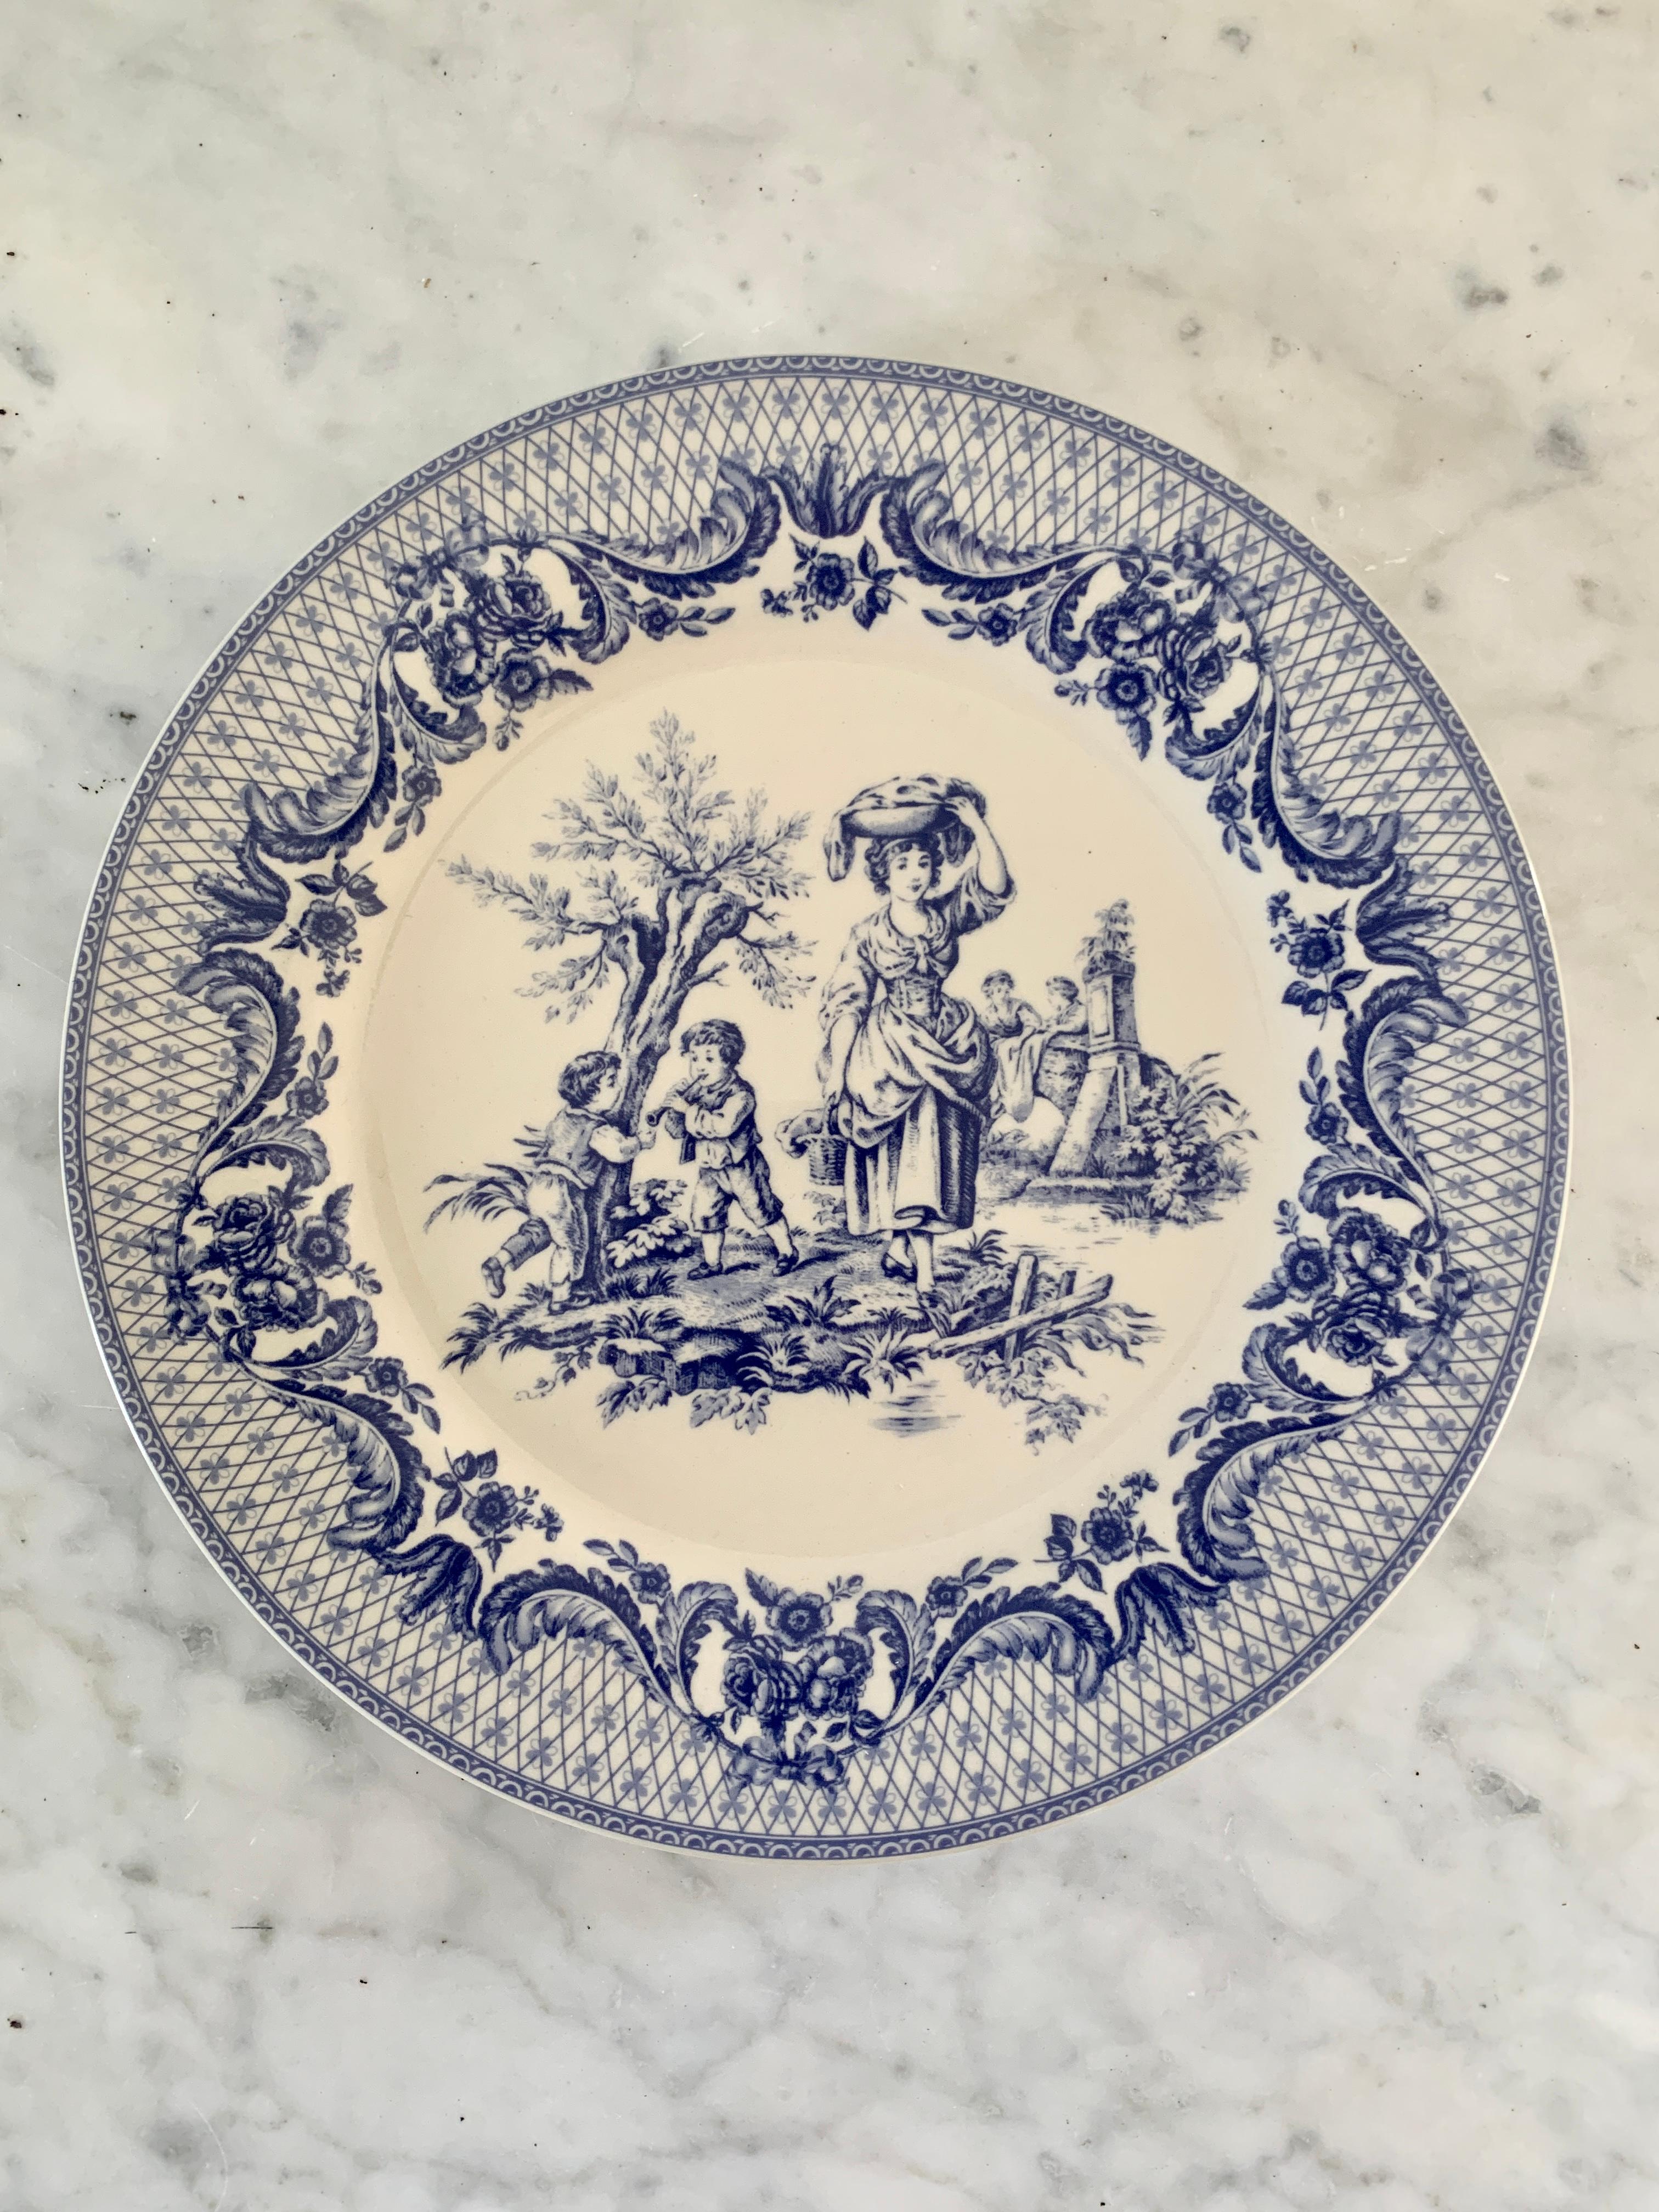 Ein Set aus drei schönen, blau-weißen Porzellantellern im neoklassizistischen Stil mit pastoralen Motiven, ideal für den Tisch oder die Wand

USA, Ende des 20. Jahrhunderts

Maße: 8 